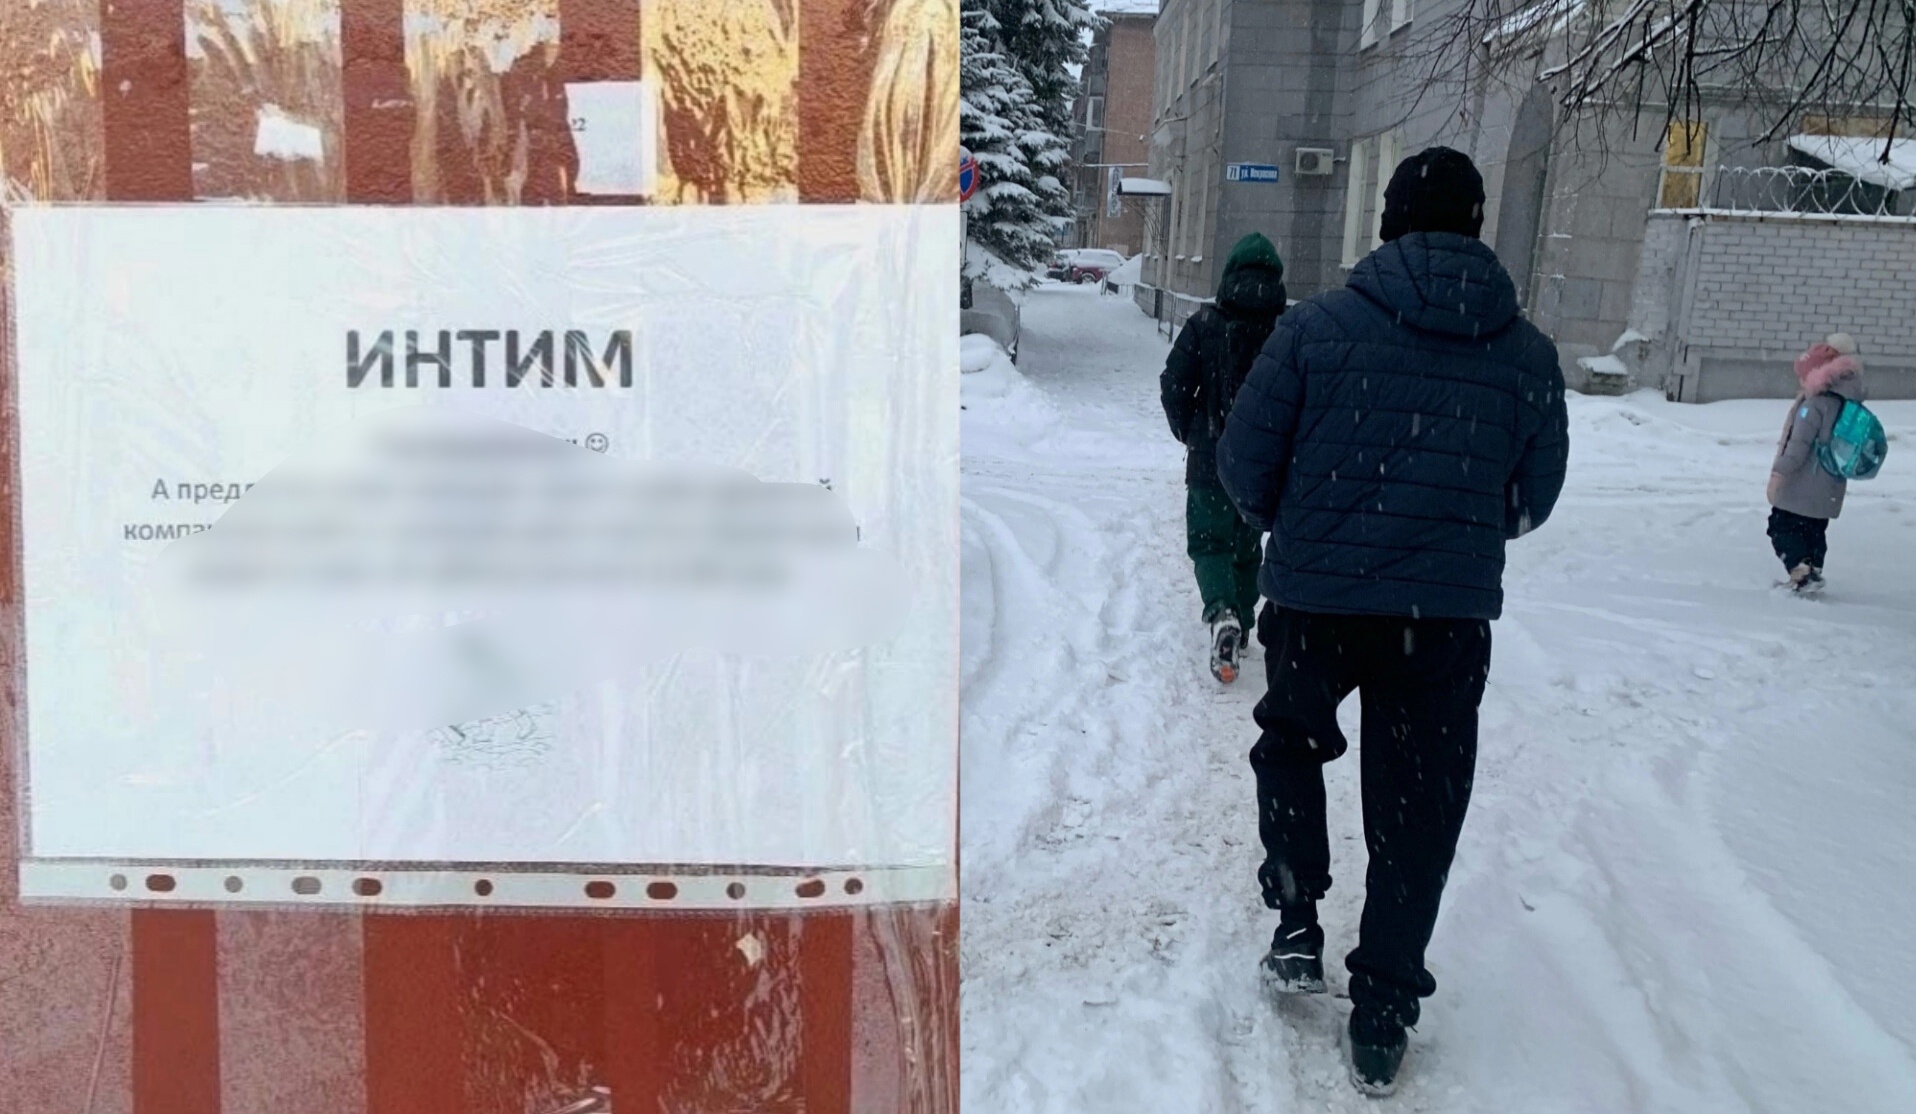 "Интим": гениальный пиар-ход заставил жителей Рыбинска собраться во дворе